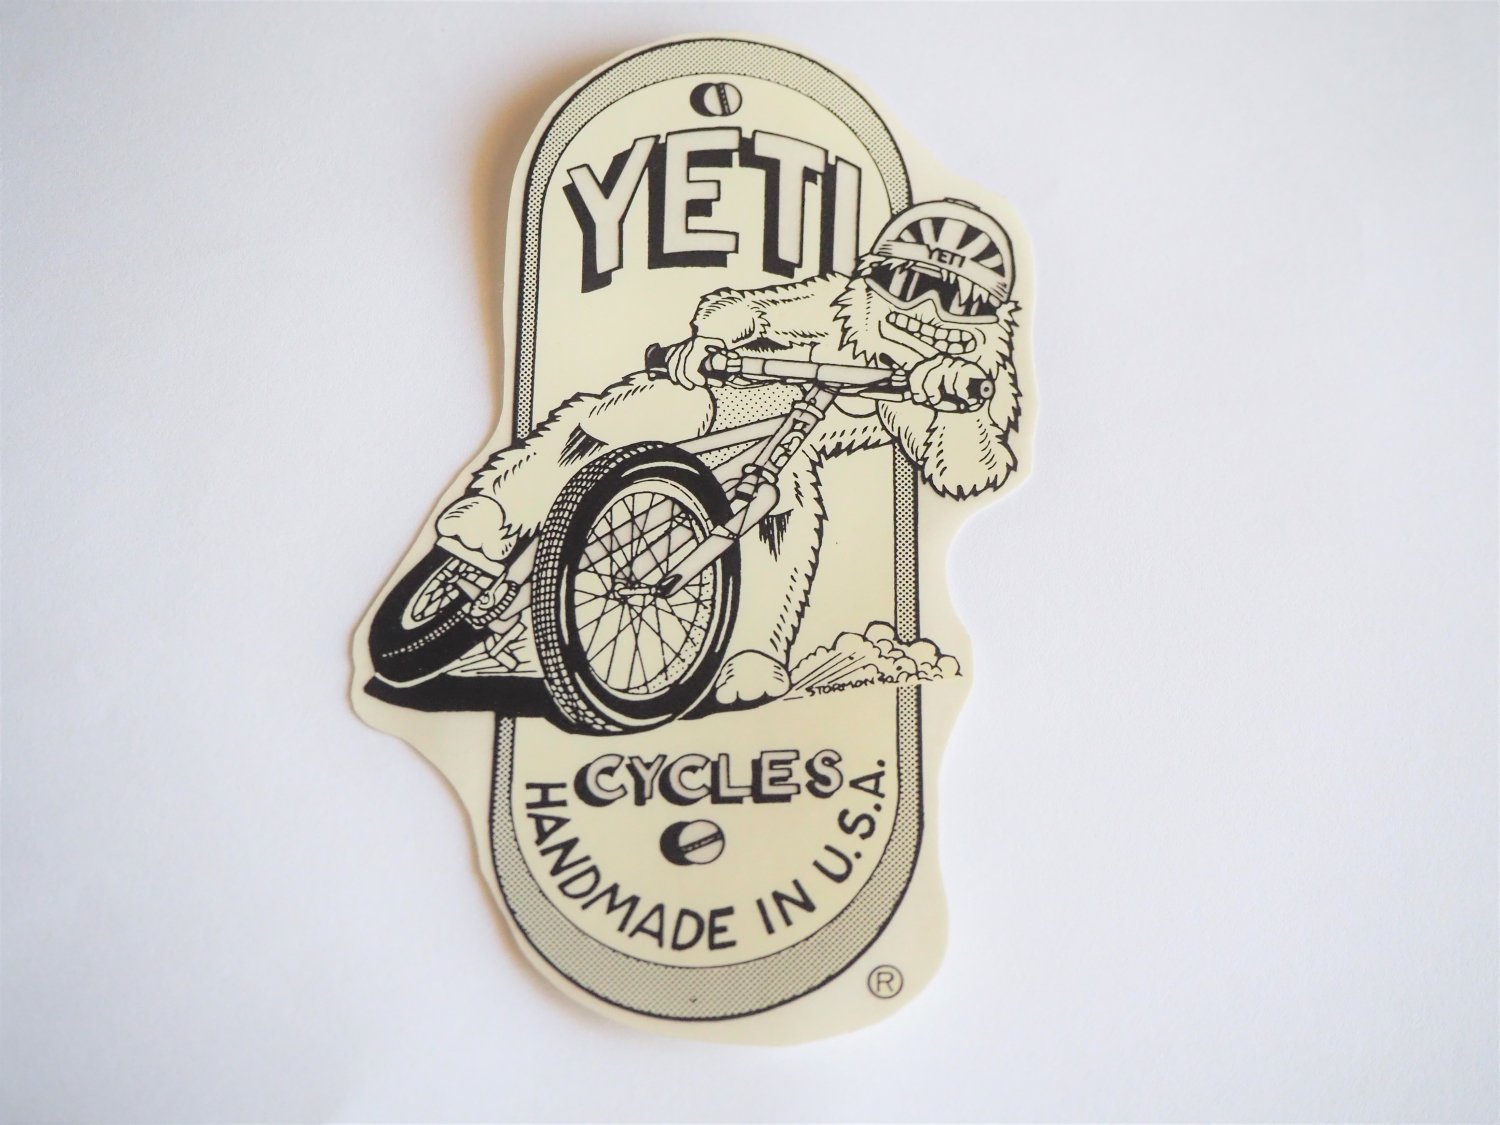 YETI CYCLES